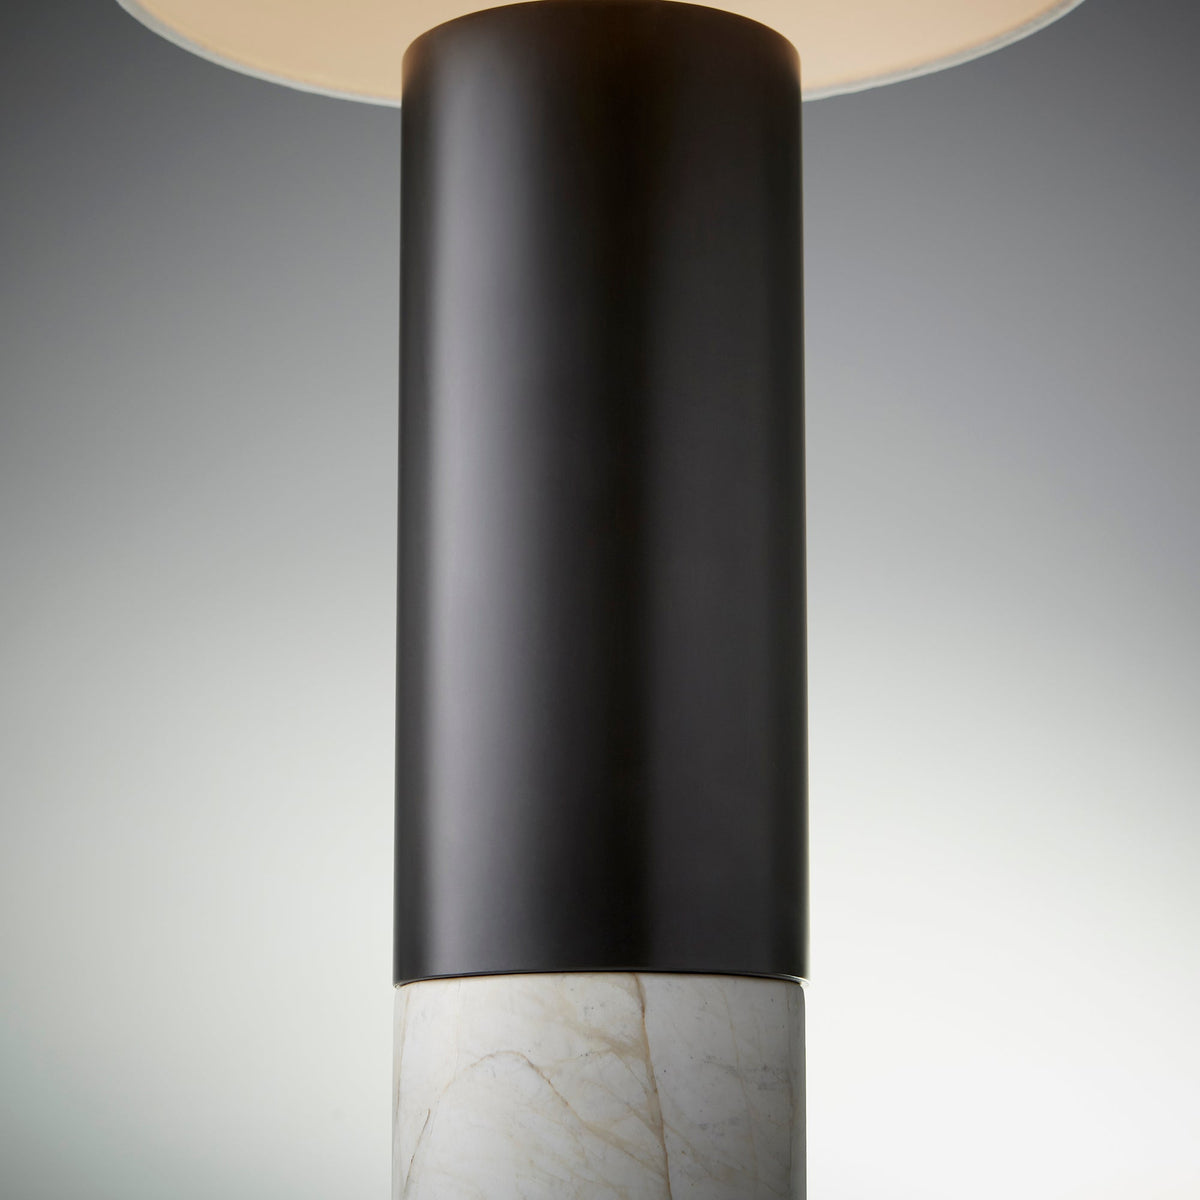 Adana Table Lamp by Cyan